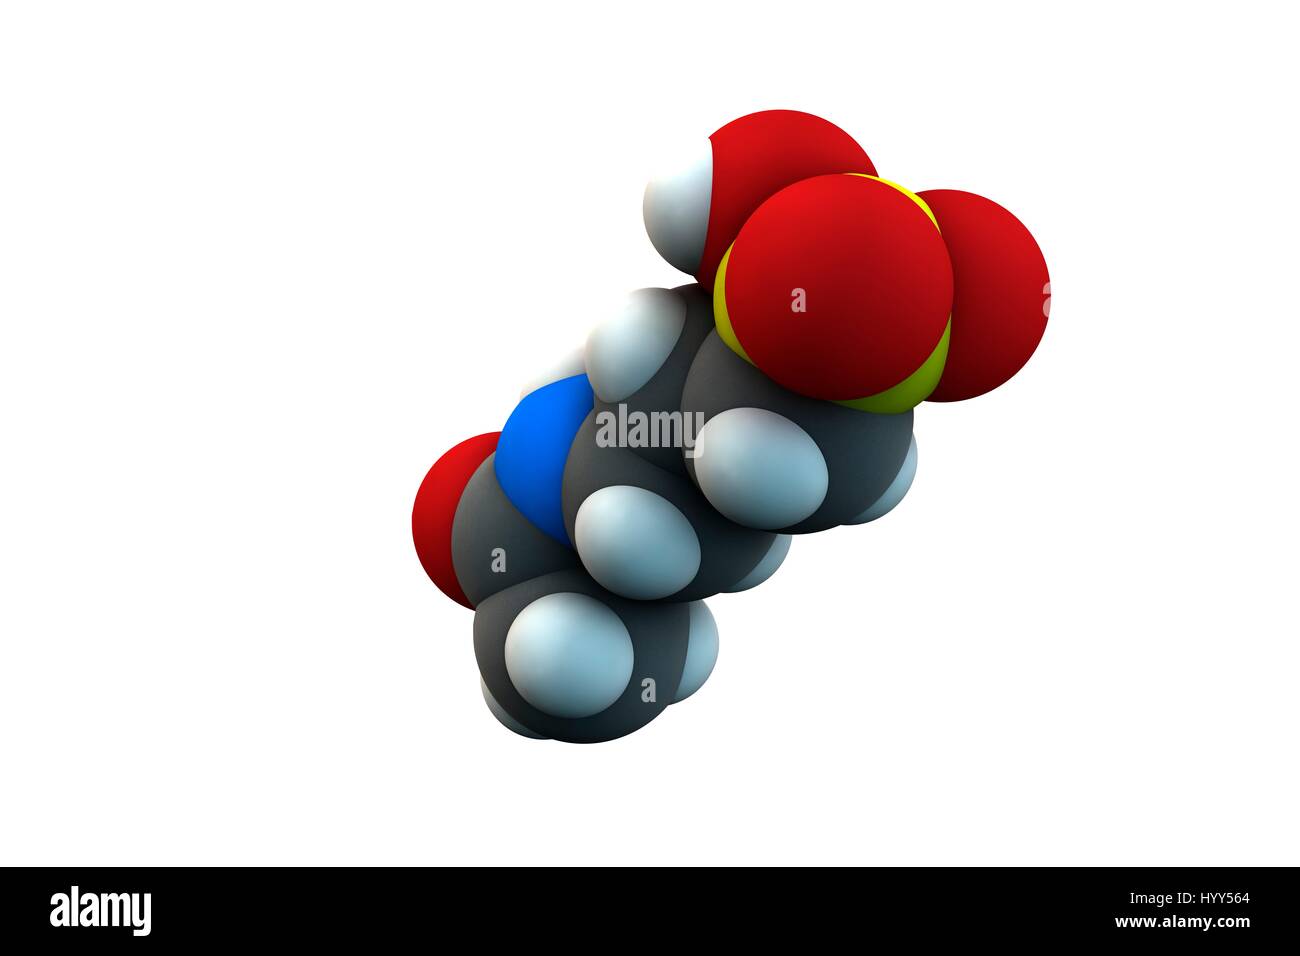 Le traitement de l'alcoolisme de l'acamprosate molécule pharmaceutique. La formule chimique est C5H11NO4S. Les atomes sont représentés comme des sphères : le carbone (gris), l'hydrogène (blanc), l'azote (bleu), l'oxygène (rouge), le soufre (jaune). L'illustration. Banque D'Images